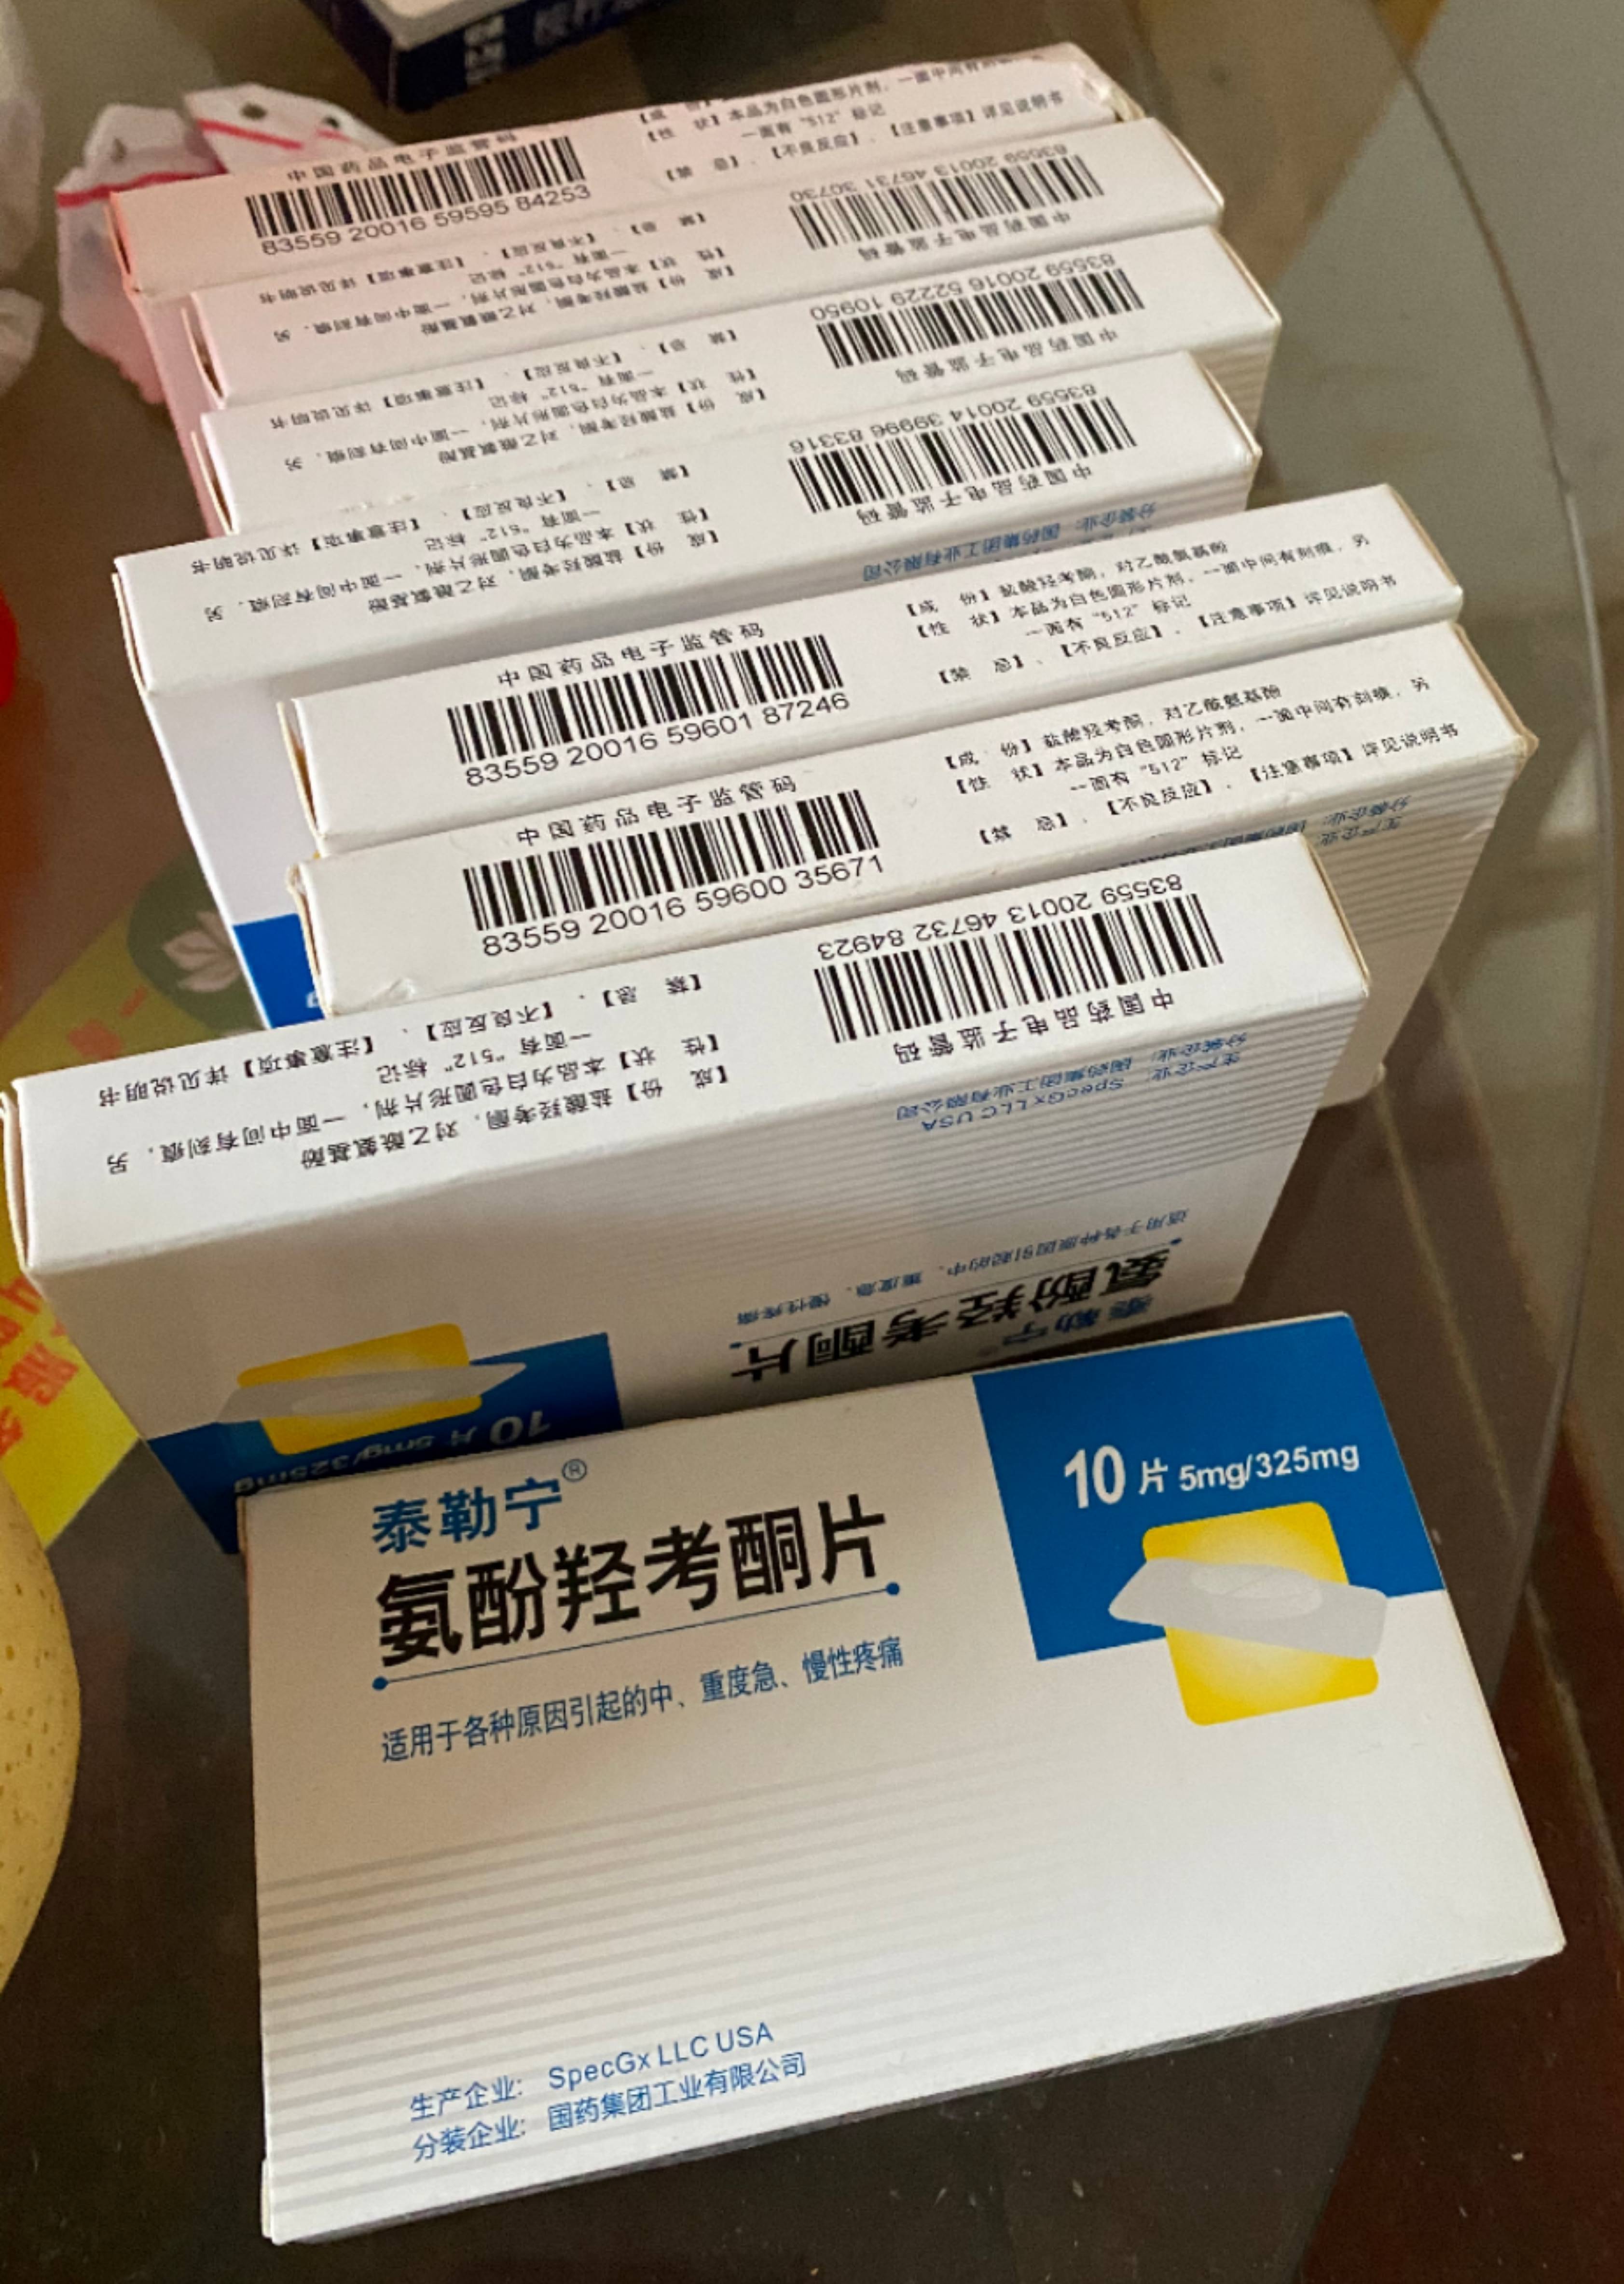 氨酚羟考酮片包装盒图片